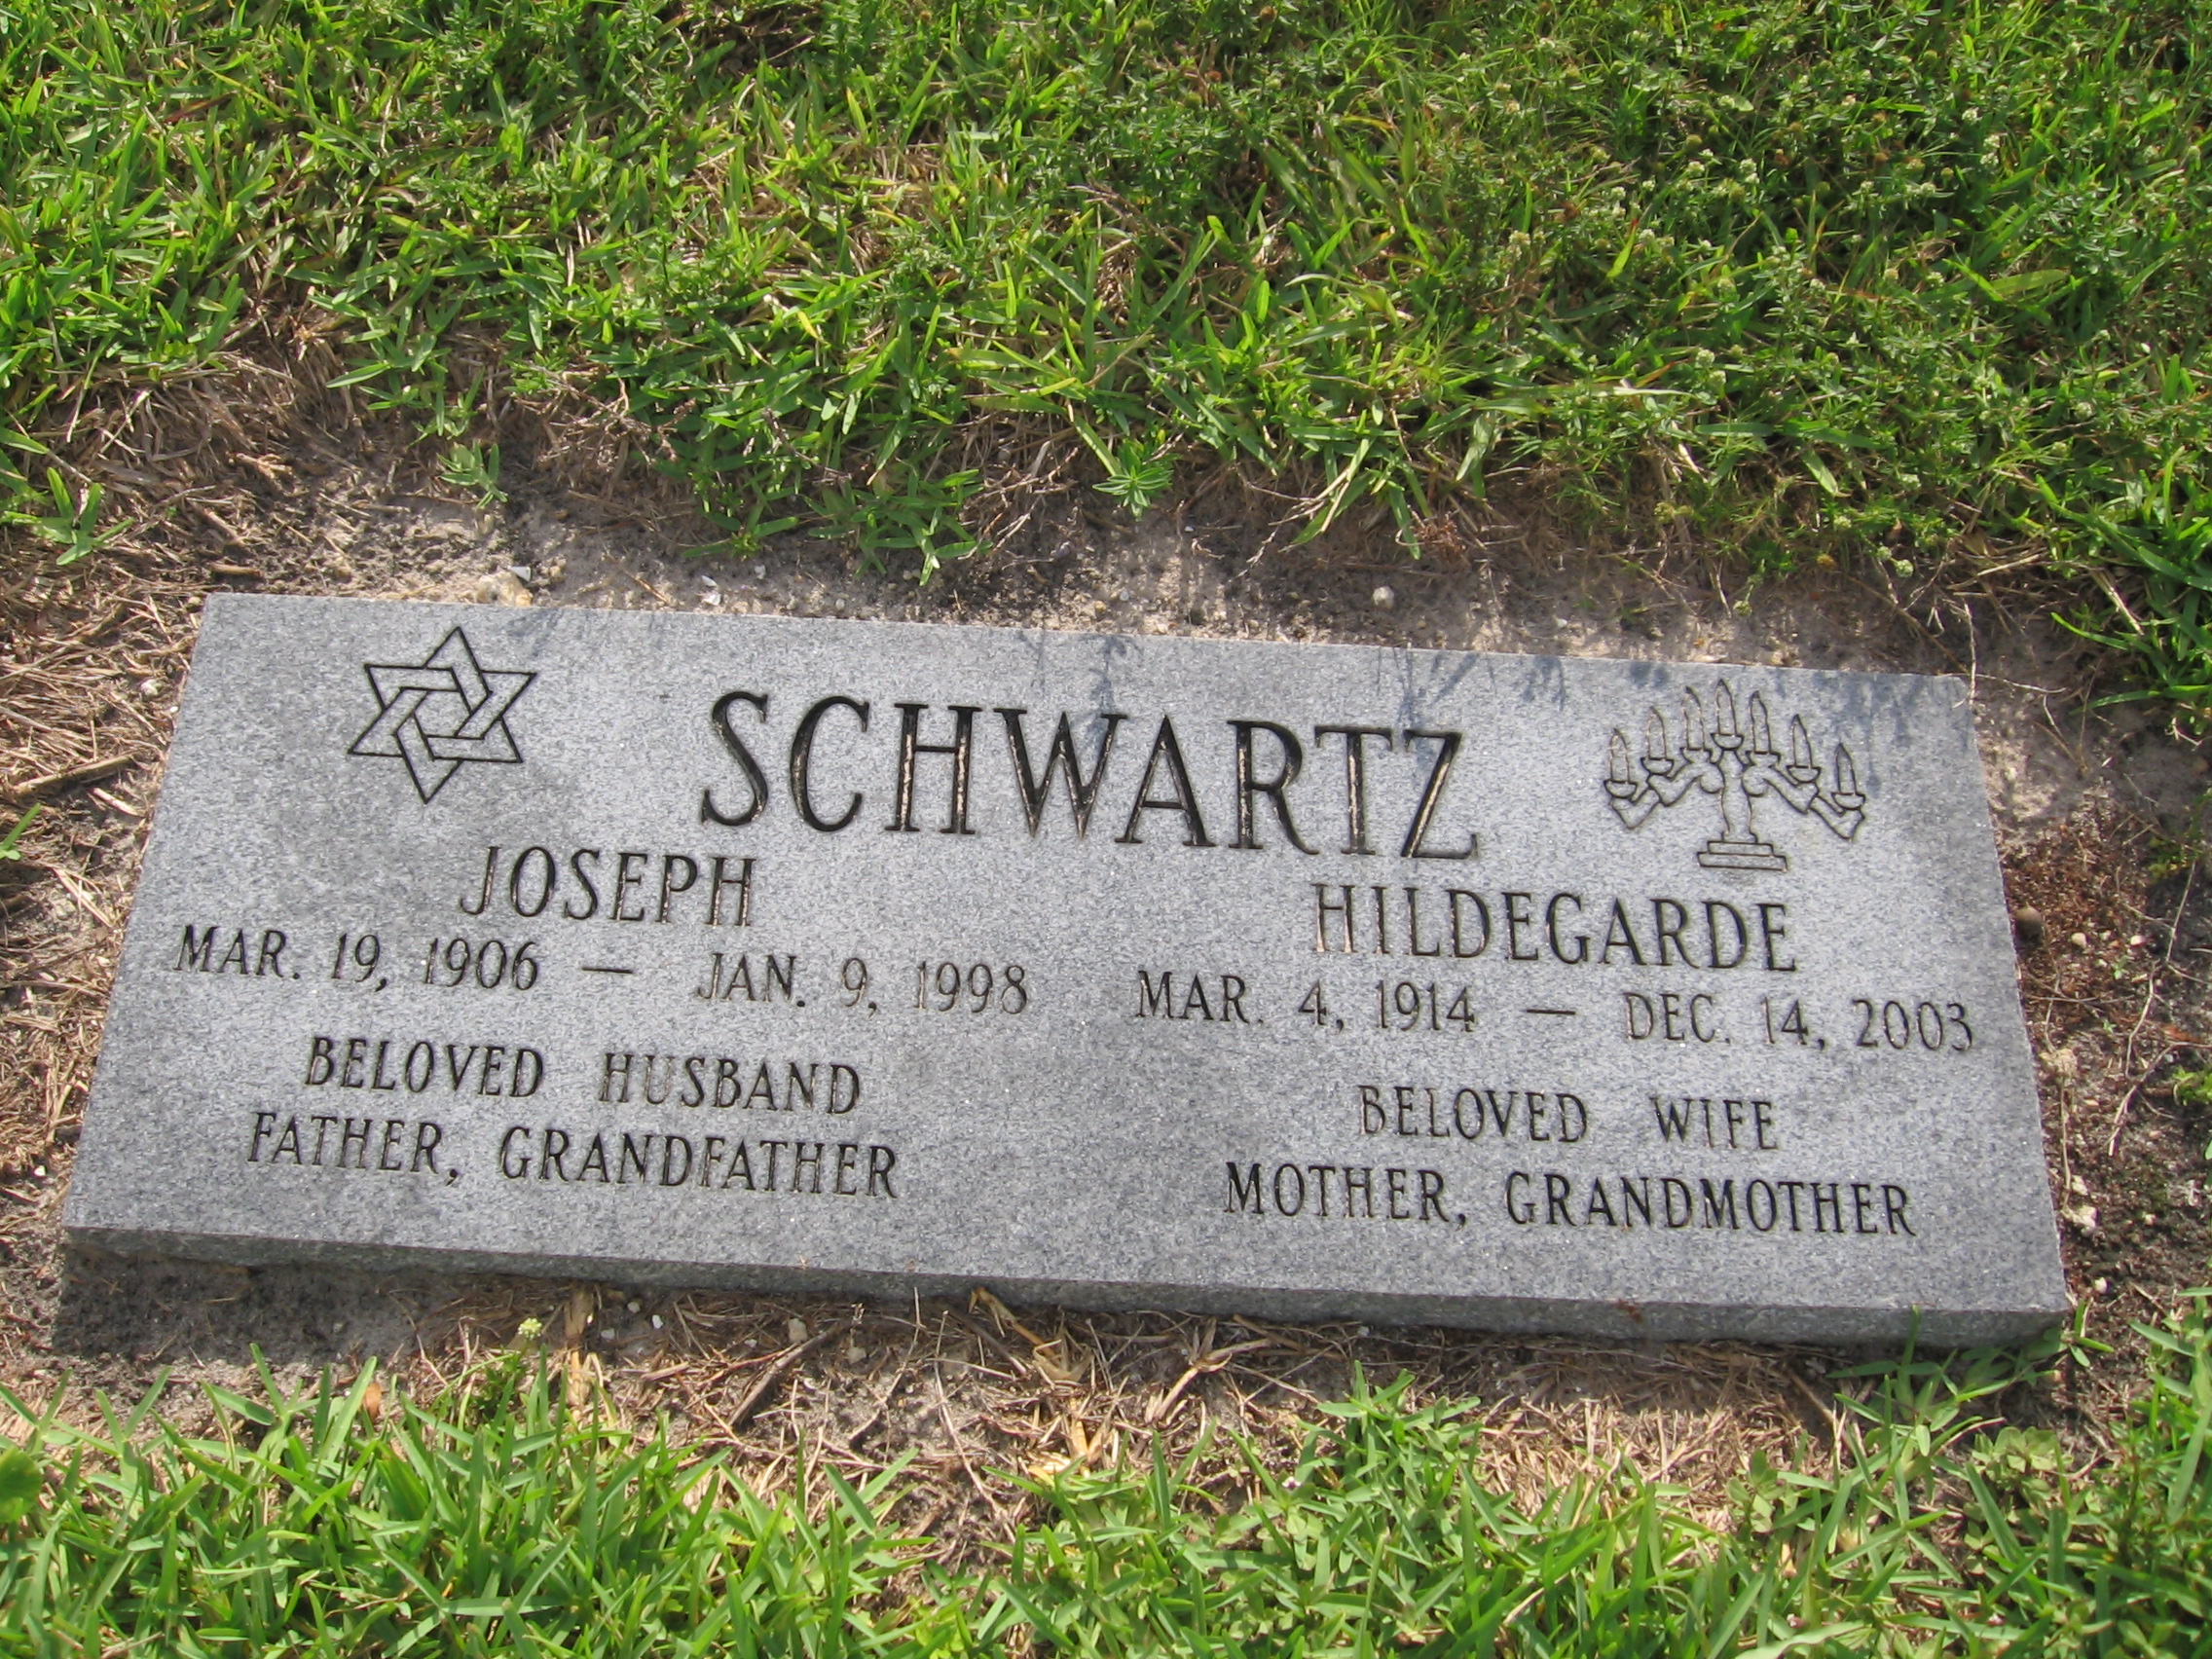 Joseph Schwartz